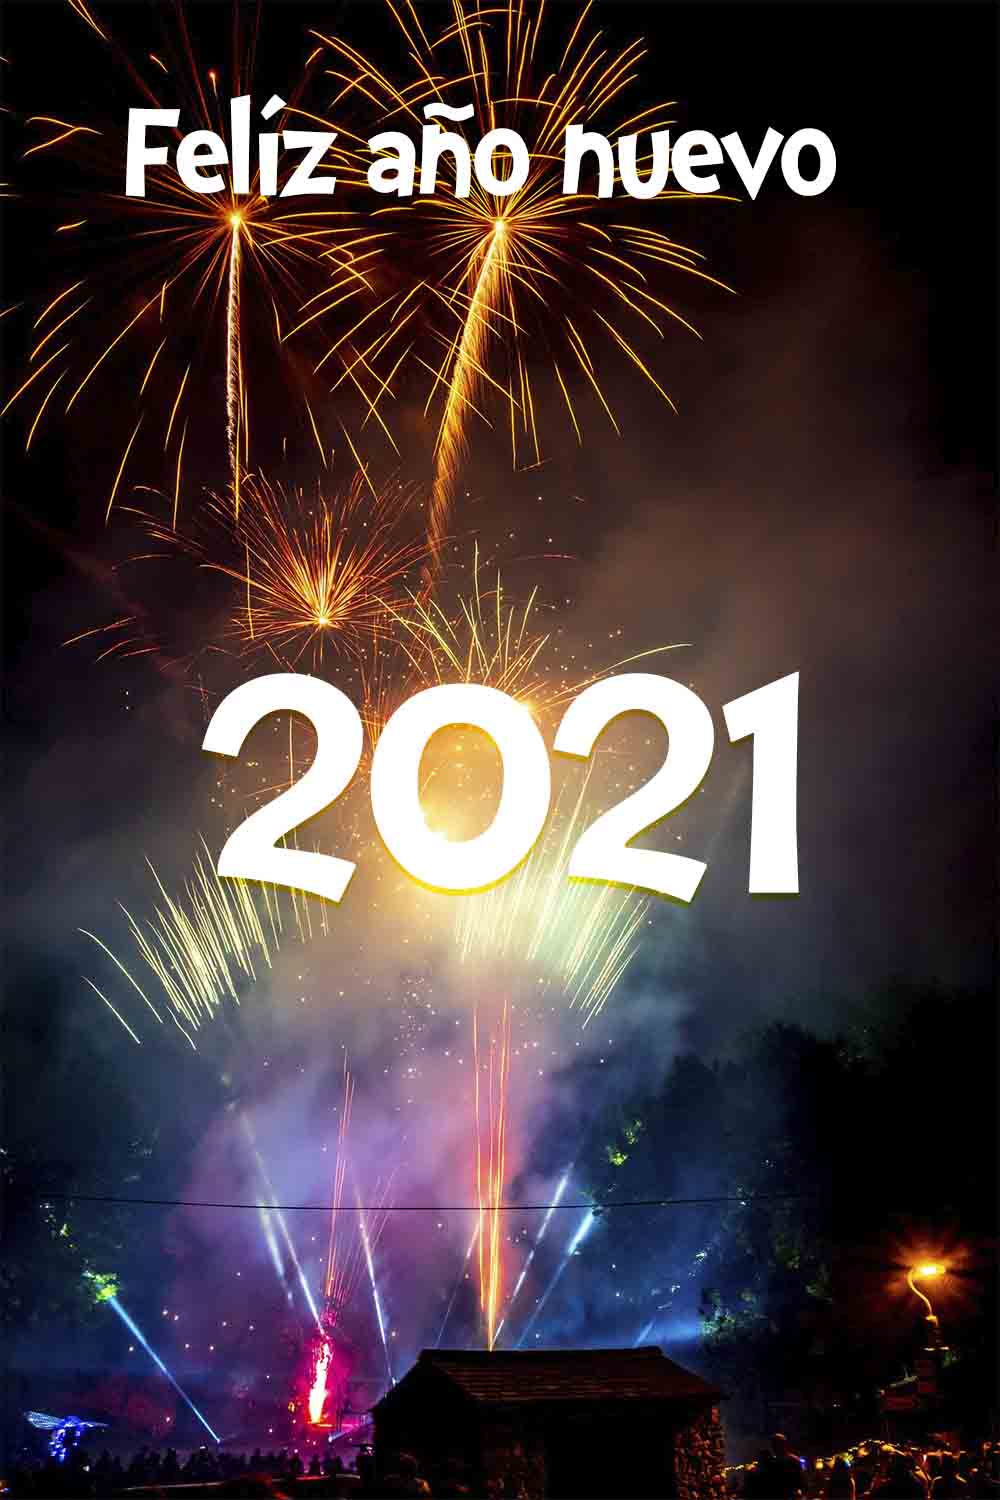 Feliz año nuevo 2021